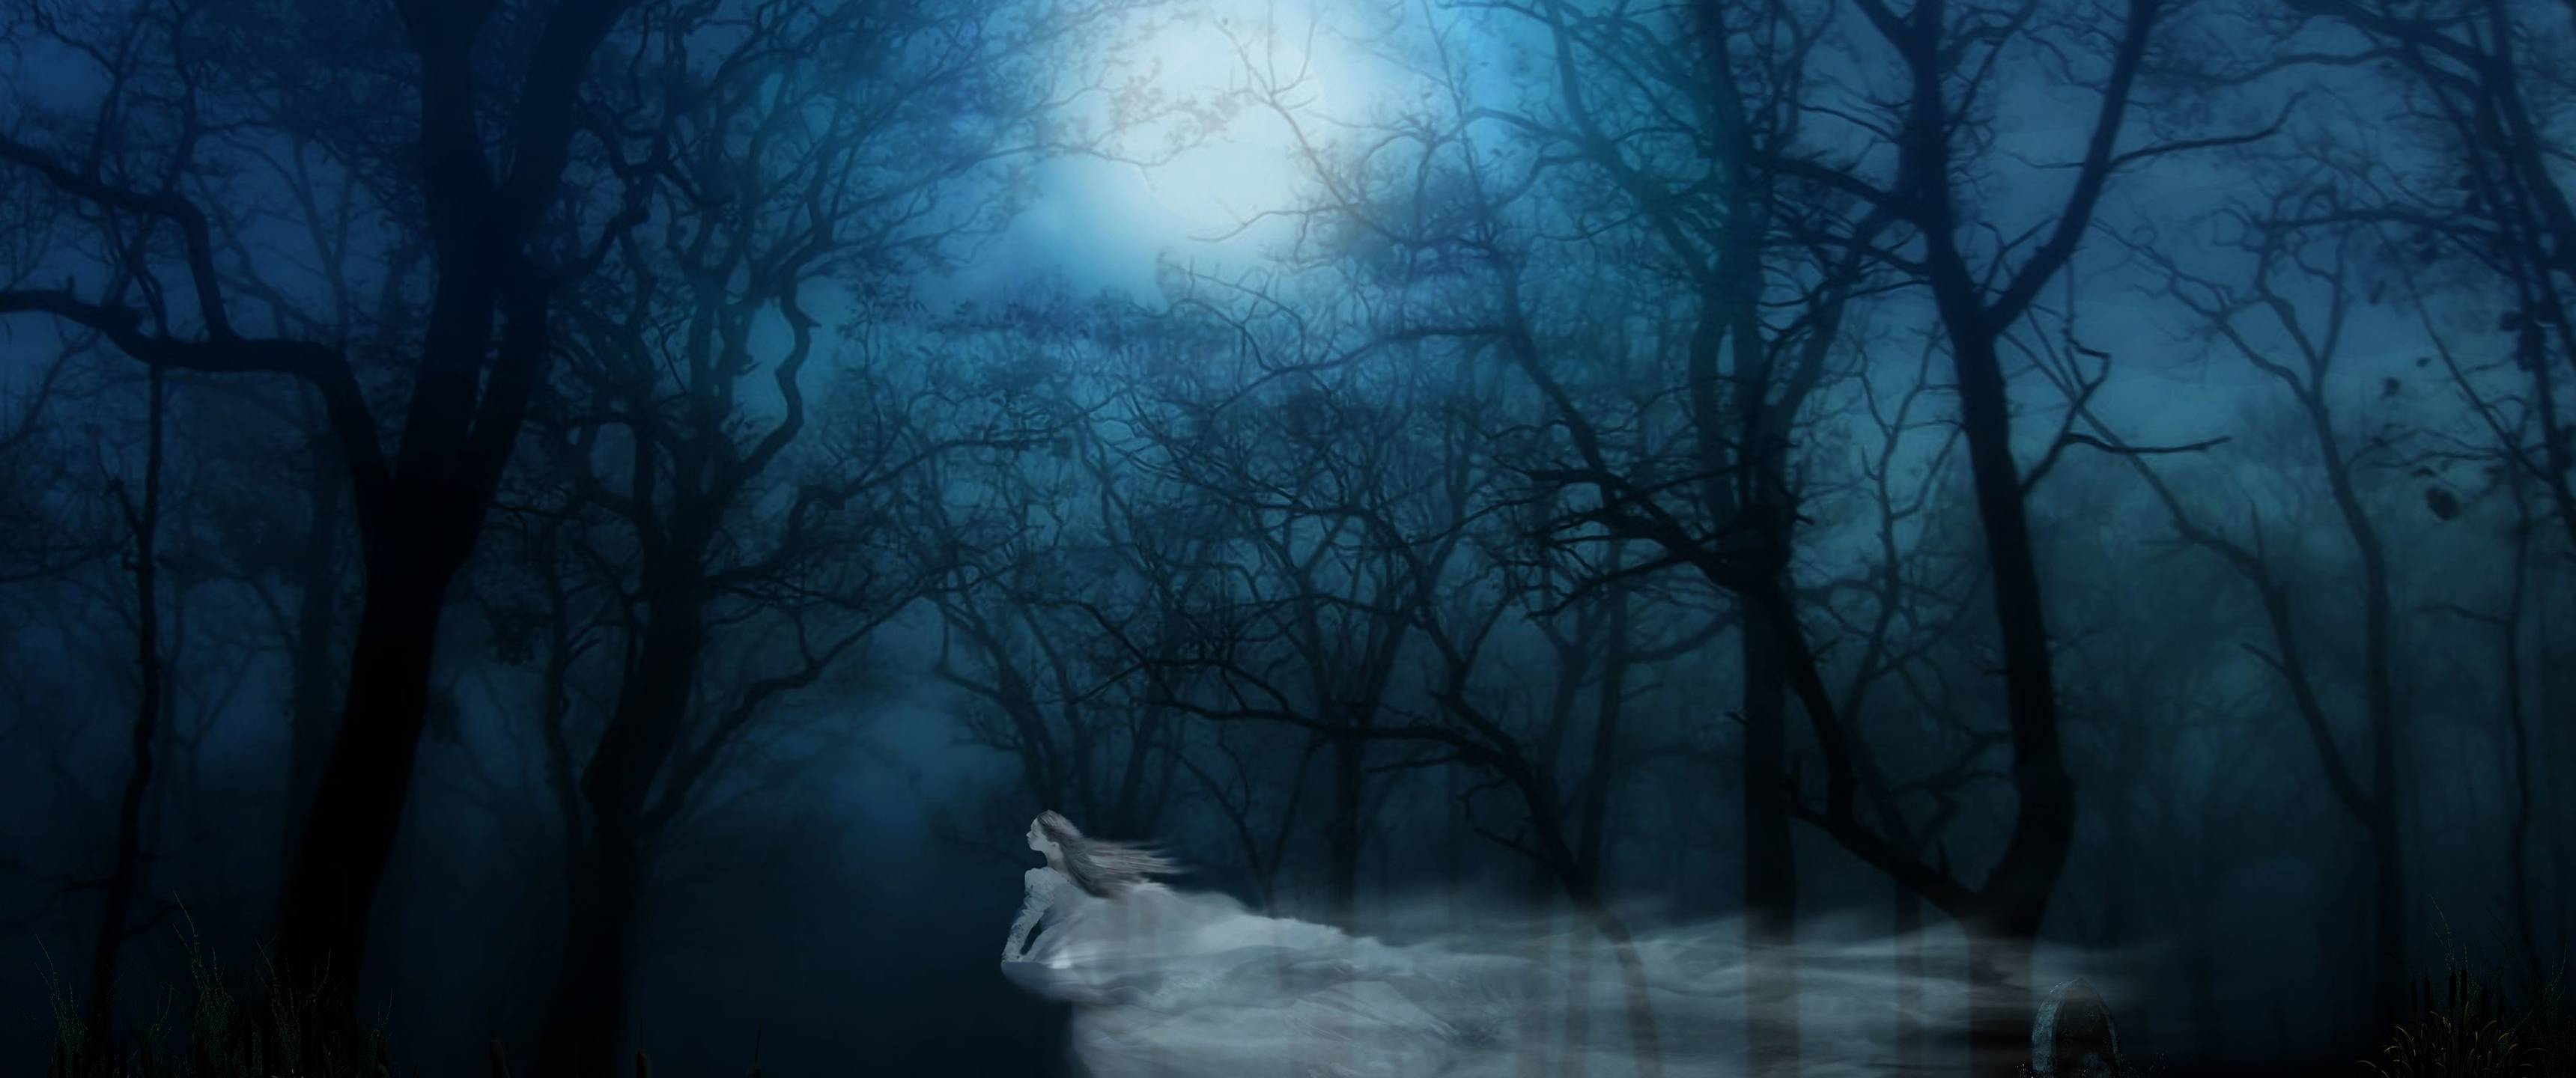 Ghost Halloween Gothic Dark Fantasy Art - HD Wallpaper 